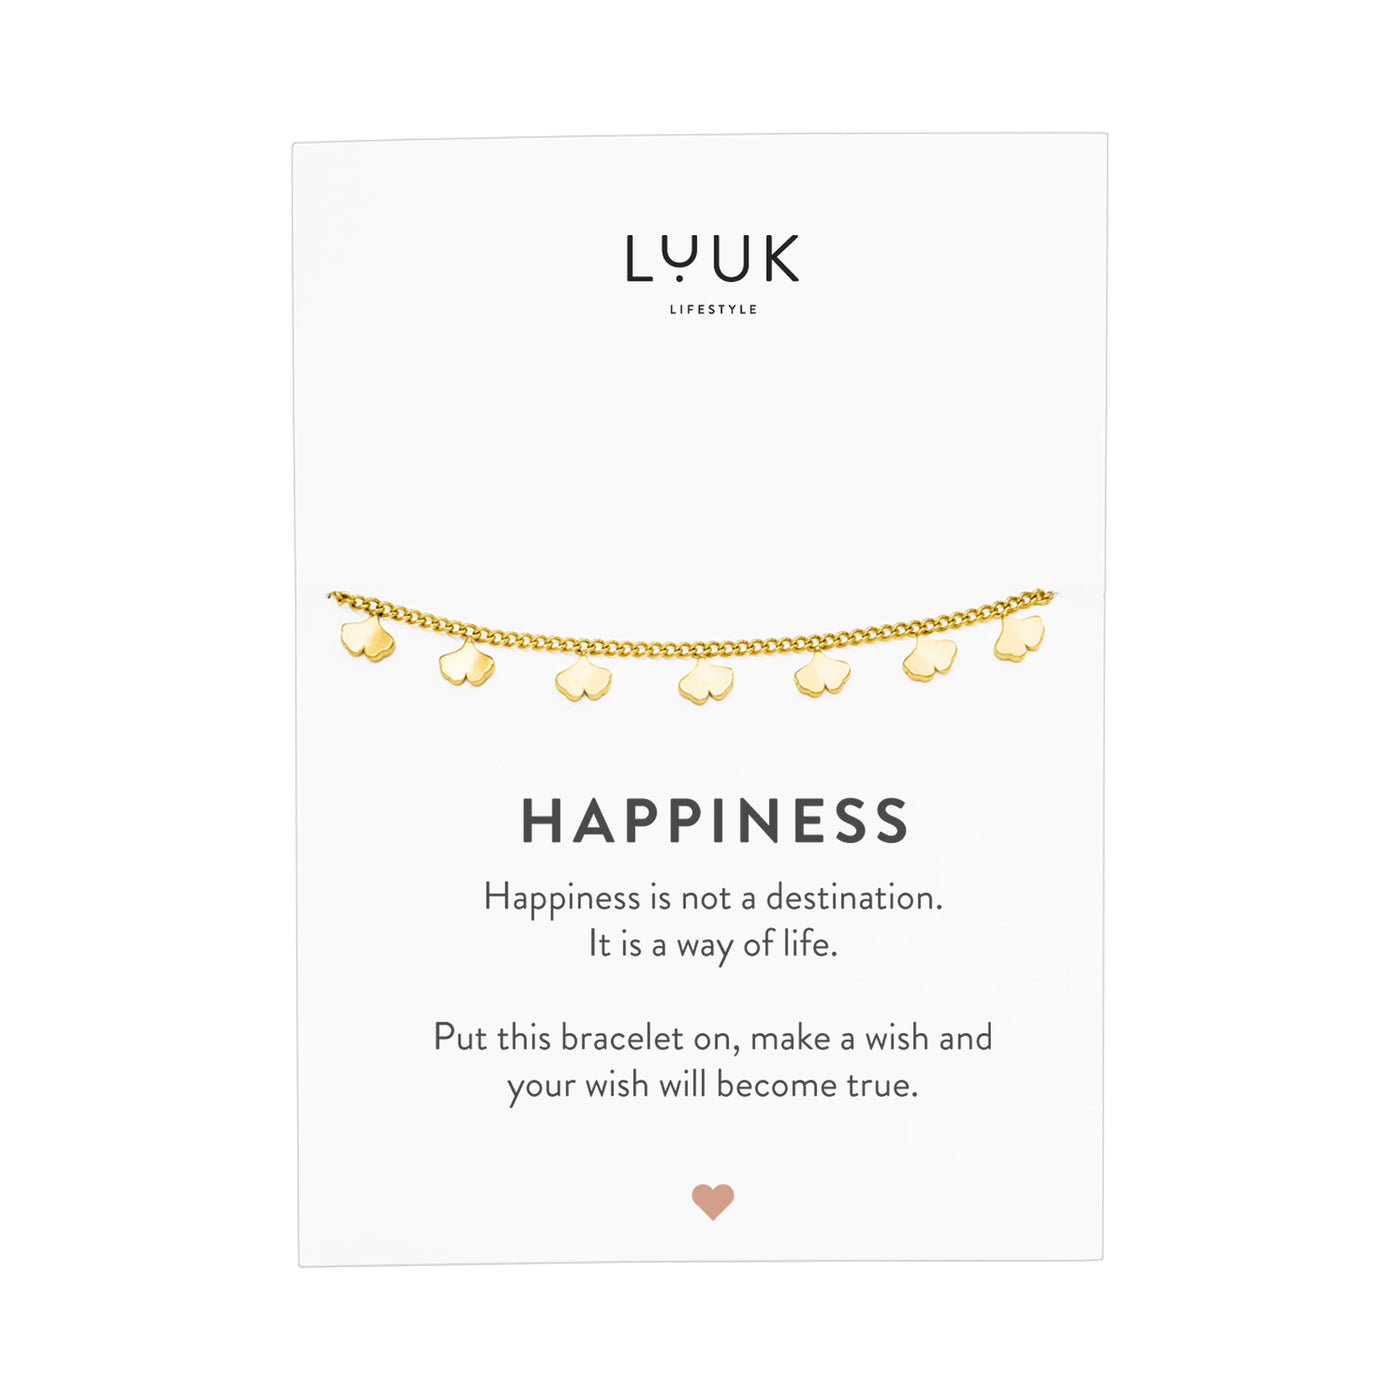 Goldenes Armband mit Ginkgo Blatt Anhängern auf Happiness Spruchkarte von der Brand Luuk Lifestyle 